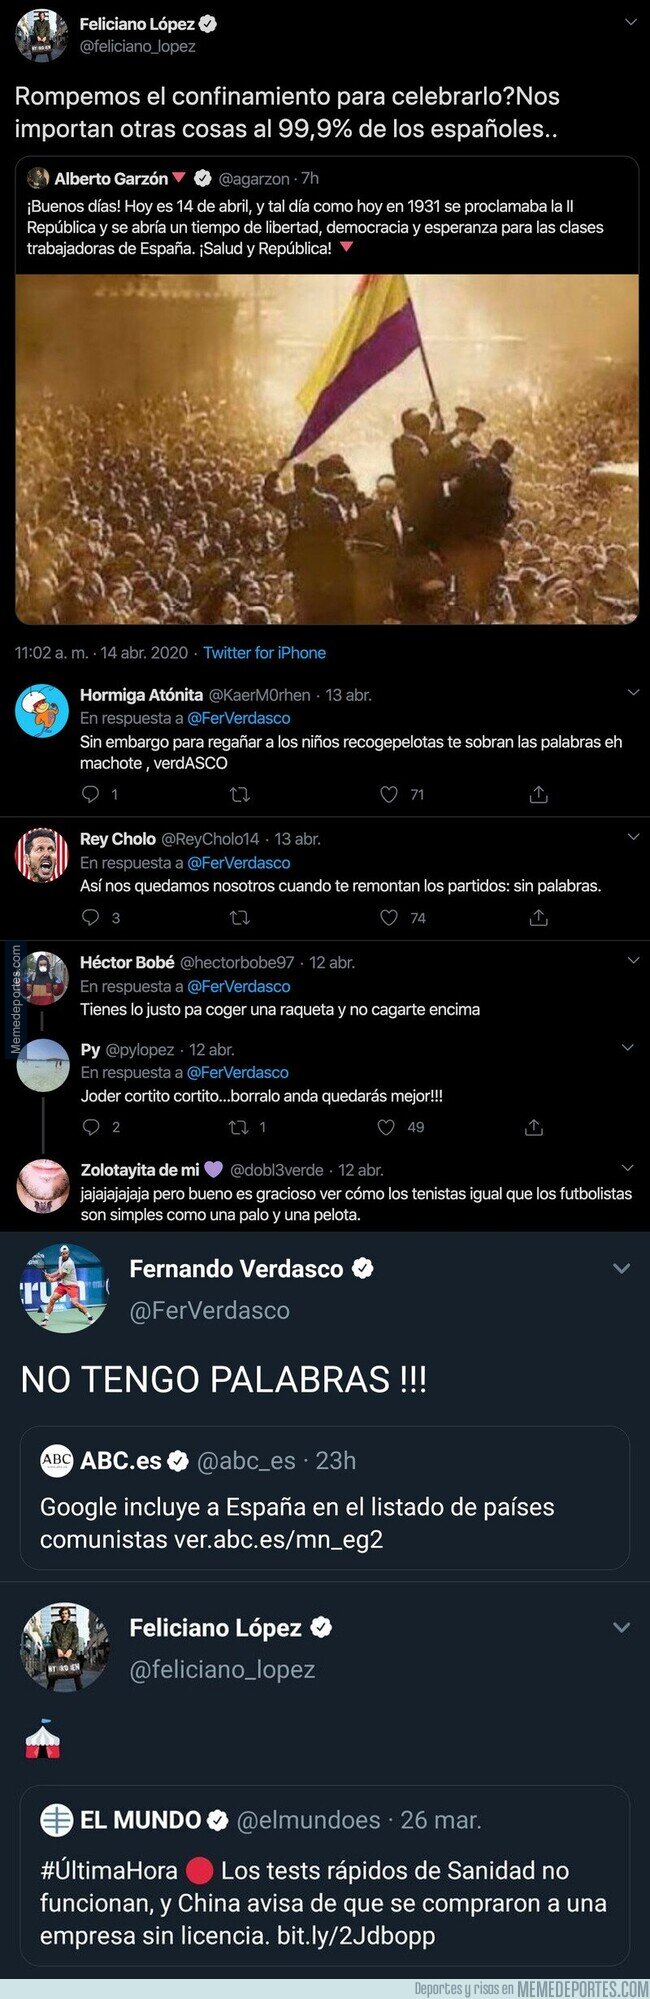 1102618 - Todos estos polémicos tuits de Feliciano López que demuestra que lo está pasando realmente mal durante la cuarentena y que es un votante de VOX